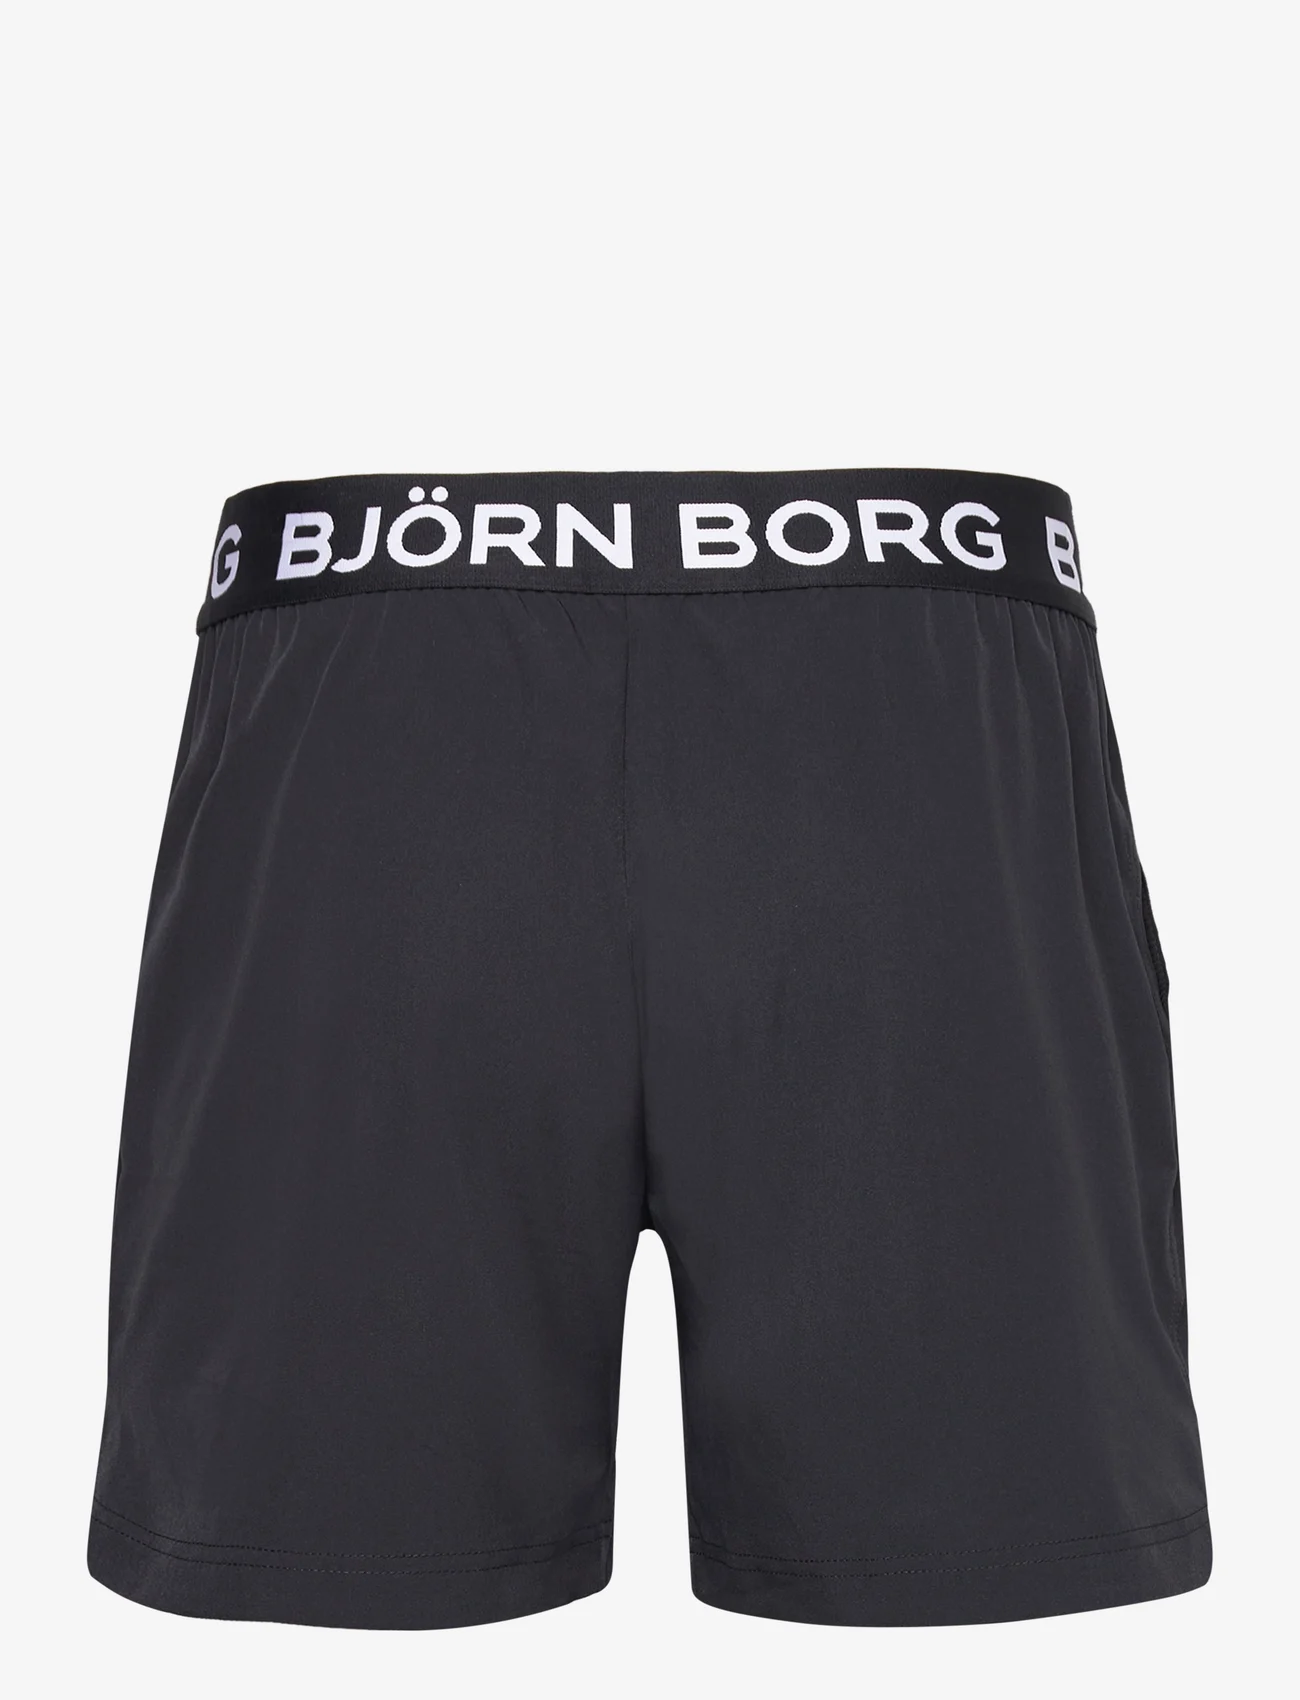 Björn Borg - BORG SHORT SHORTS - zemākās cenas - black beauty - 1